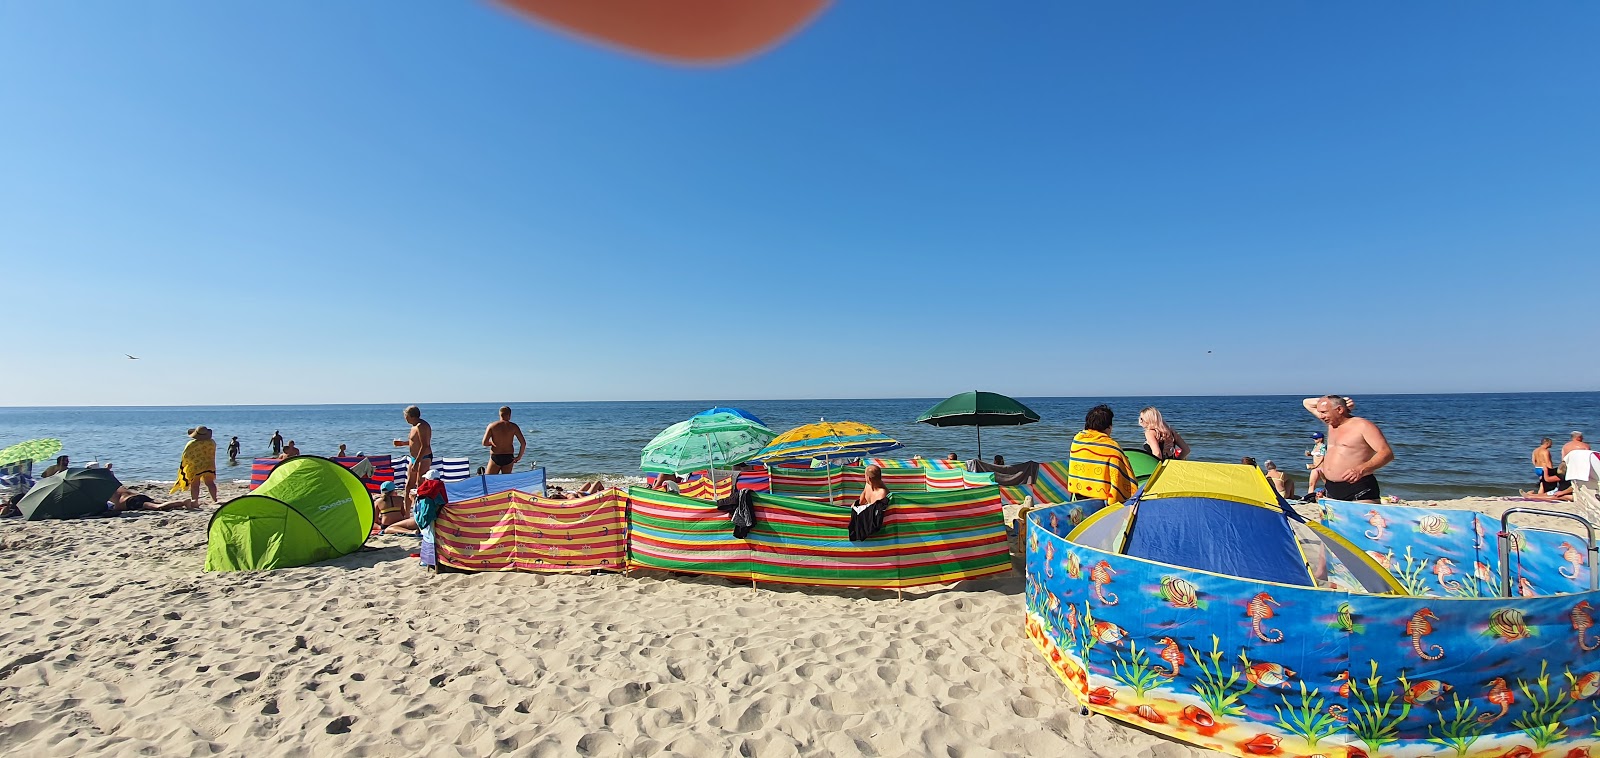 Foto de Krynica Morska beach - lugar popular entre los conocedores del relax